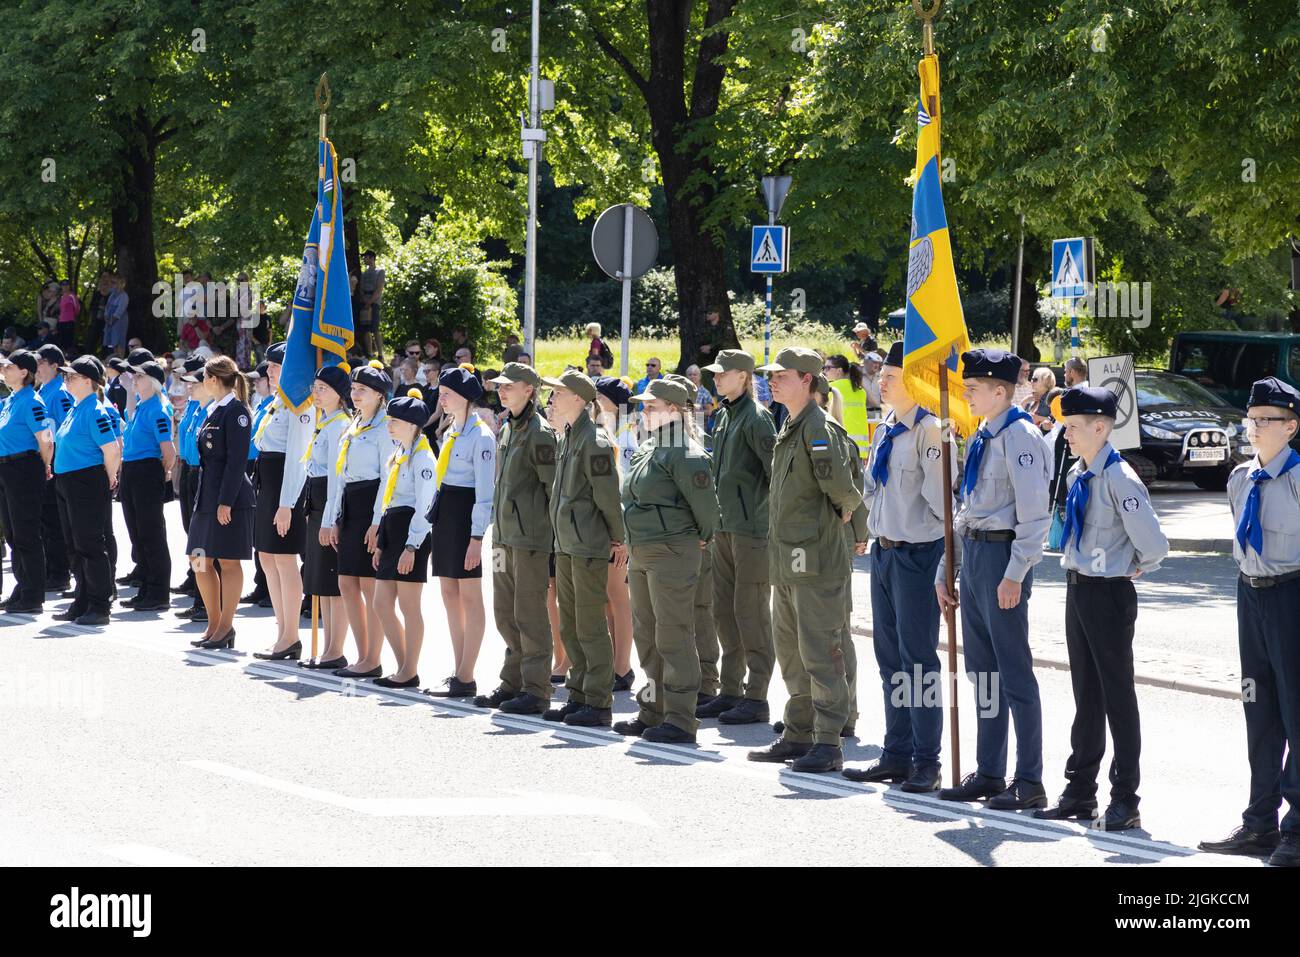 Soldados adolescentes; cadetes del ejército adolescente en la Liga de Defensa de Estonia desfilaron el Día de la Victoria; Tartu, Estonia Europa Foto de stock